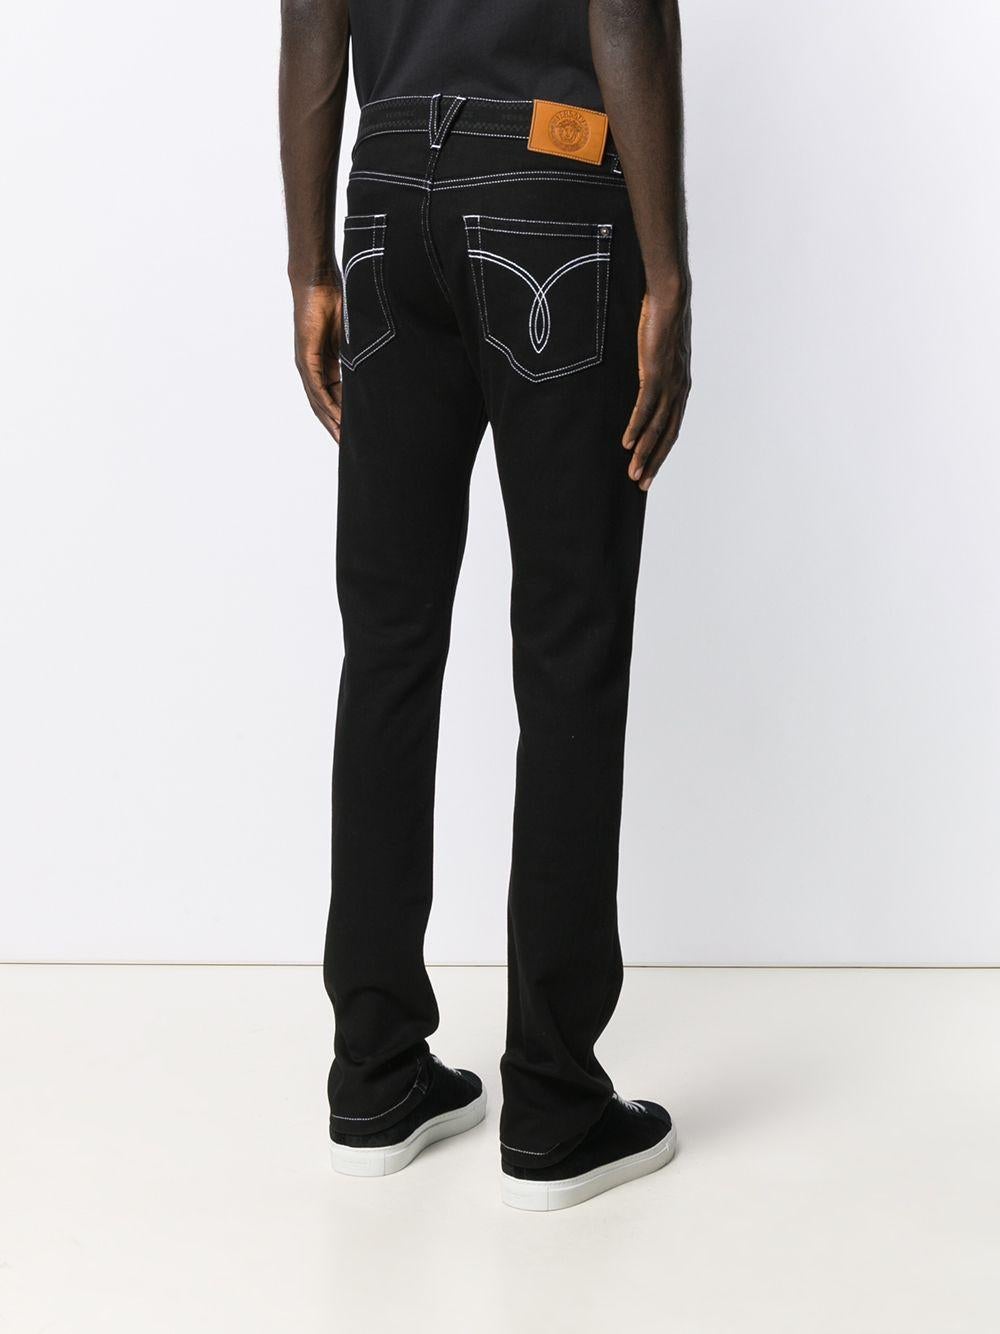 black contrast stitch jeans men's